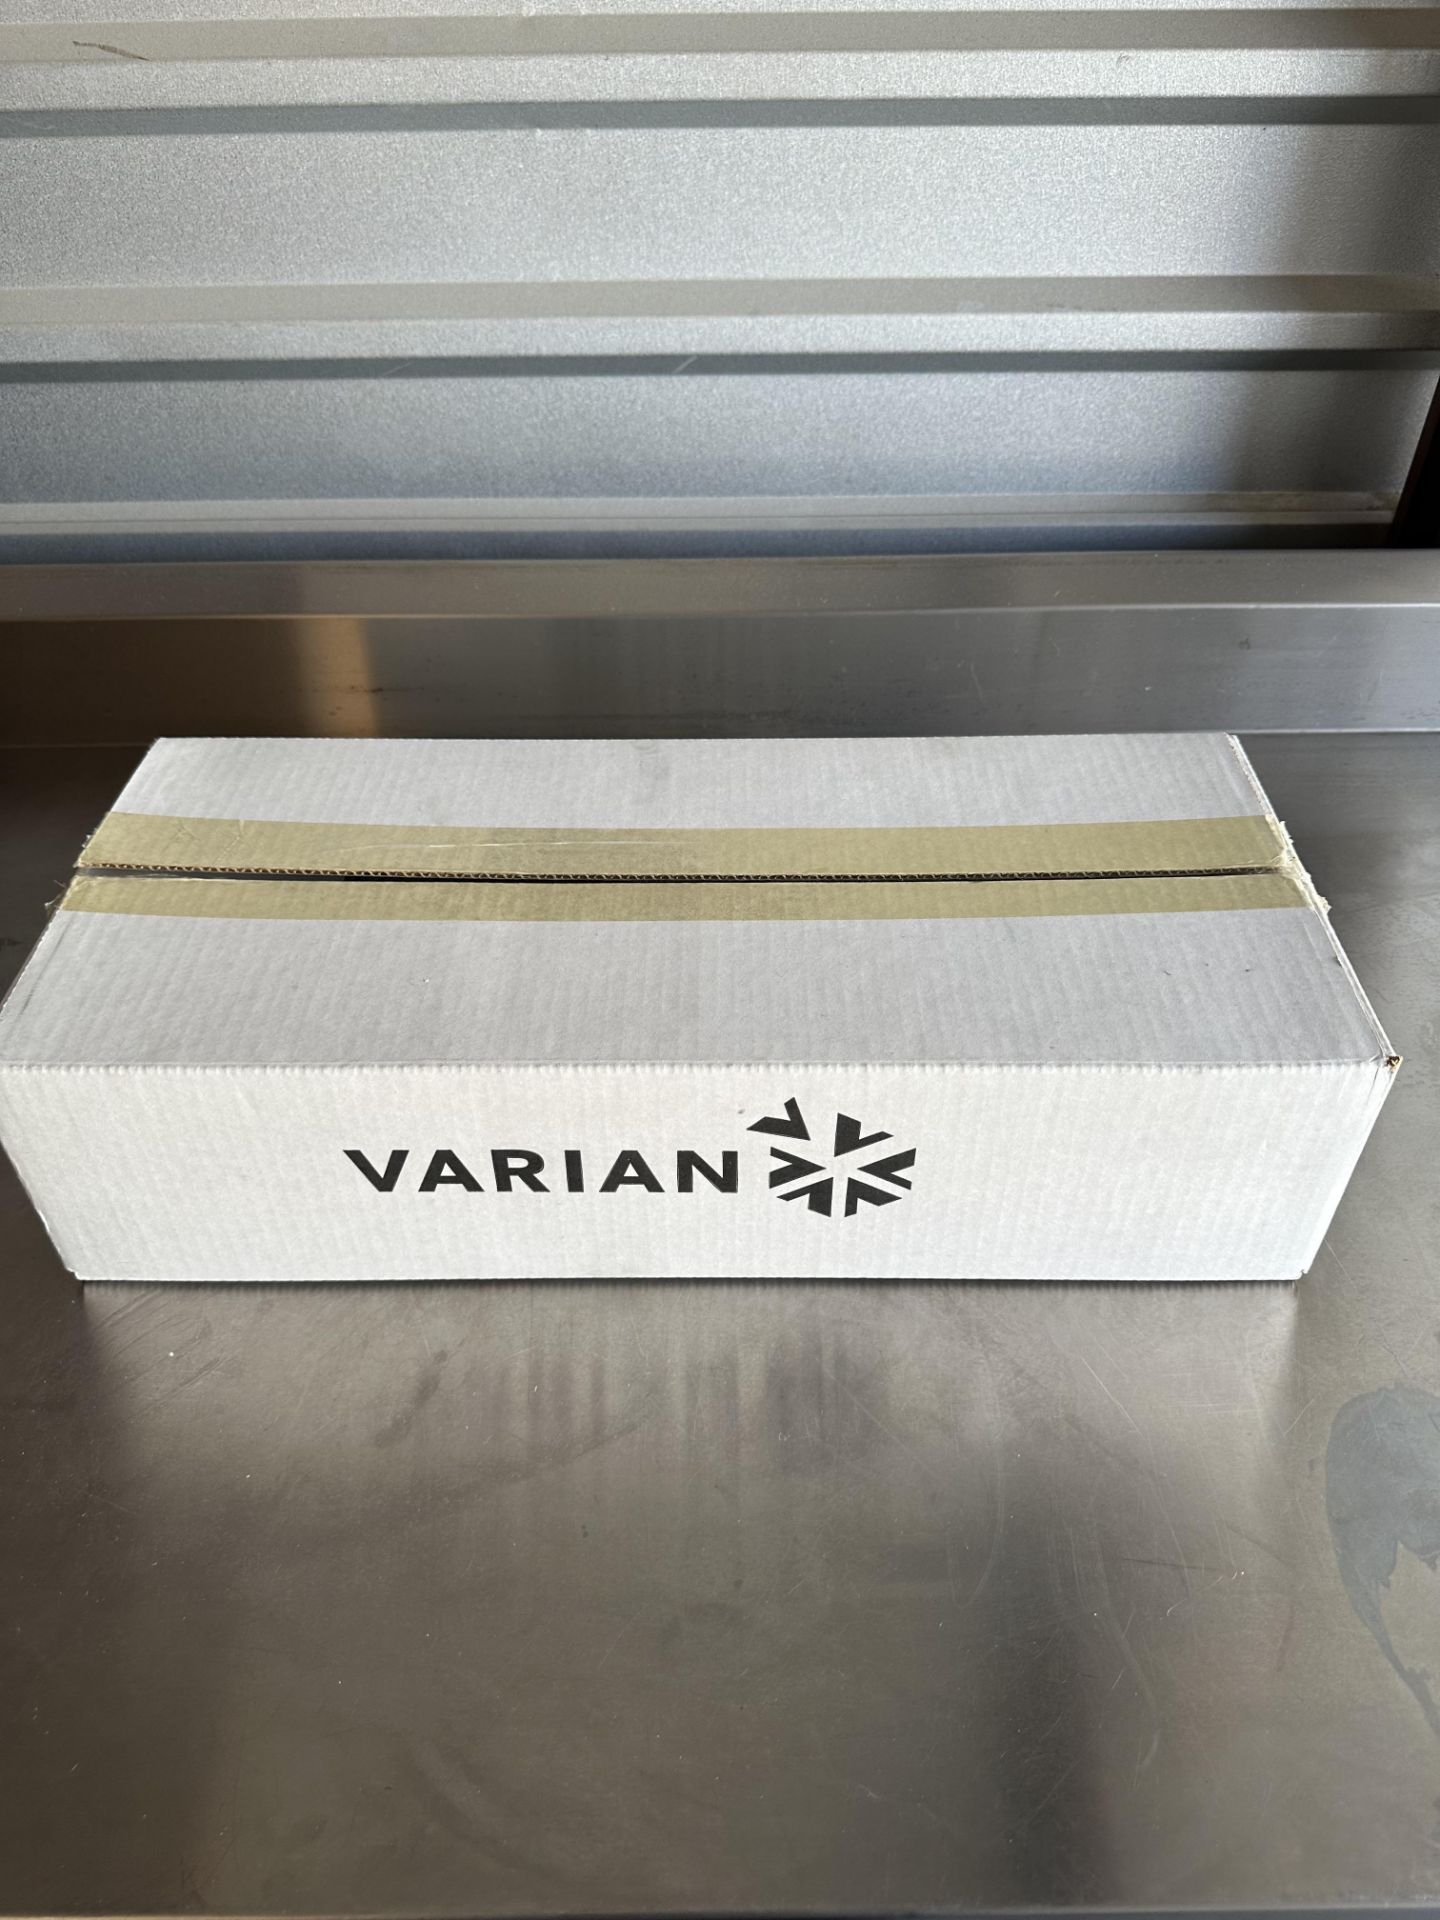 Varian Teflon Coated Paddles - Image 3 of 3